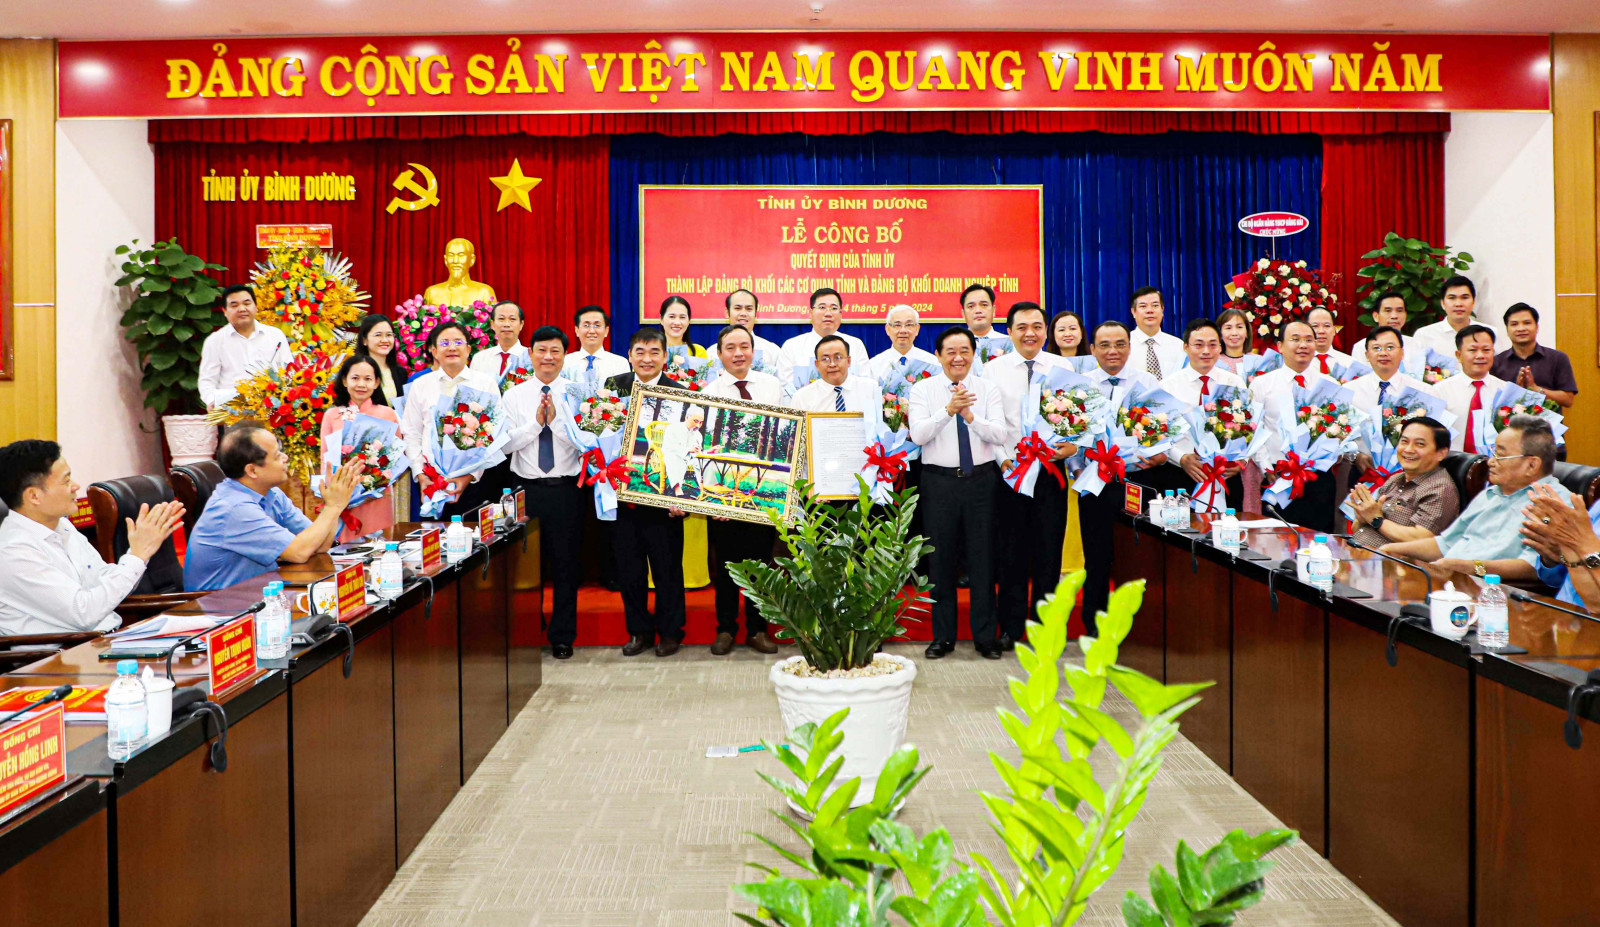 Đồng chí Nguyễn Hoàng Thao và đồng chí Võ Văn Minh tặng hoa và quà cho Ban Chấp hành Đảng bộ khối Doanh nghiệp tỉnh Bình Dương.